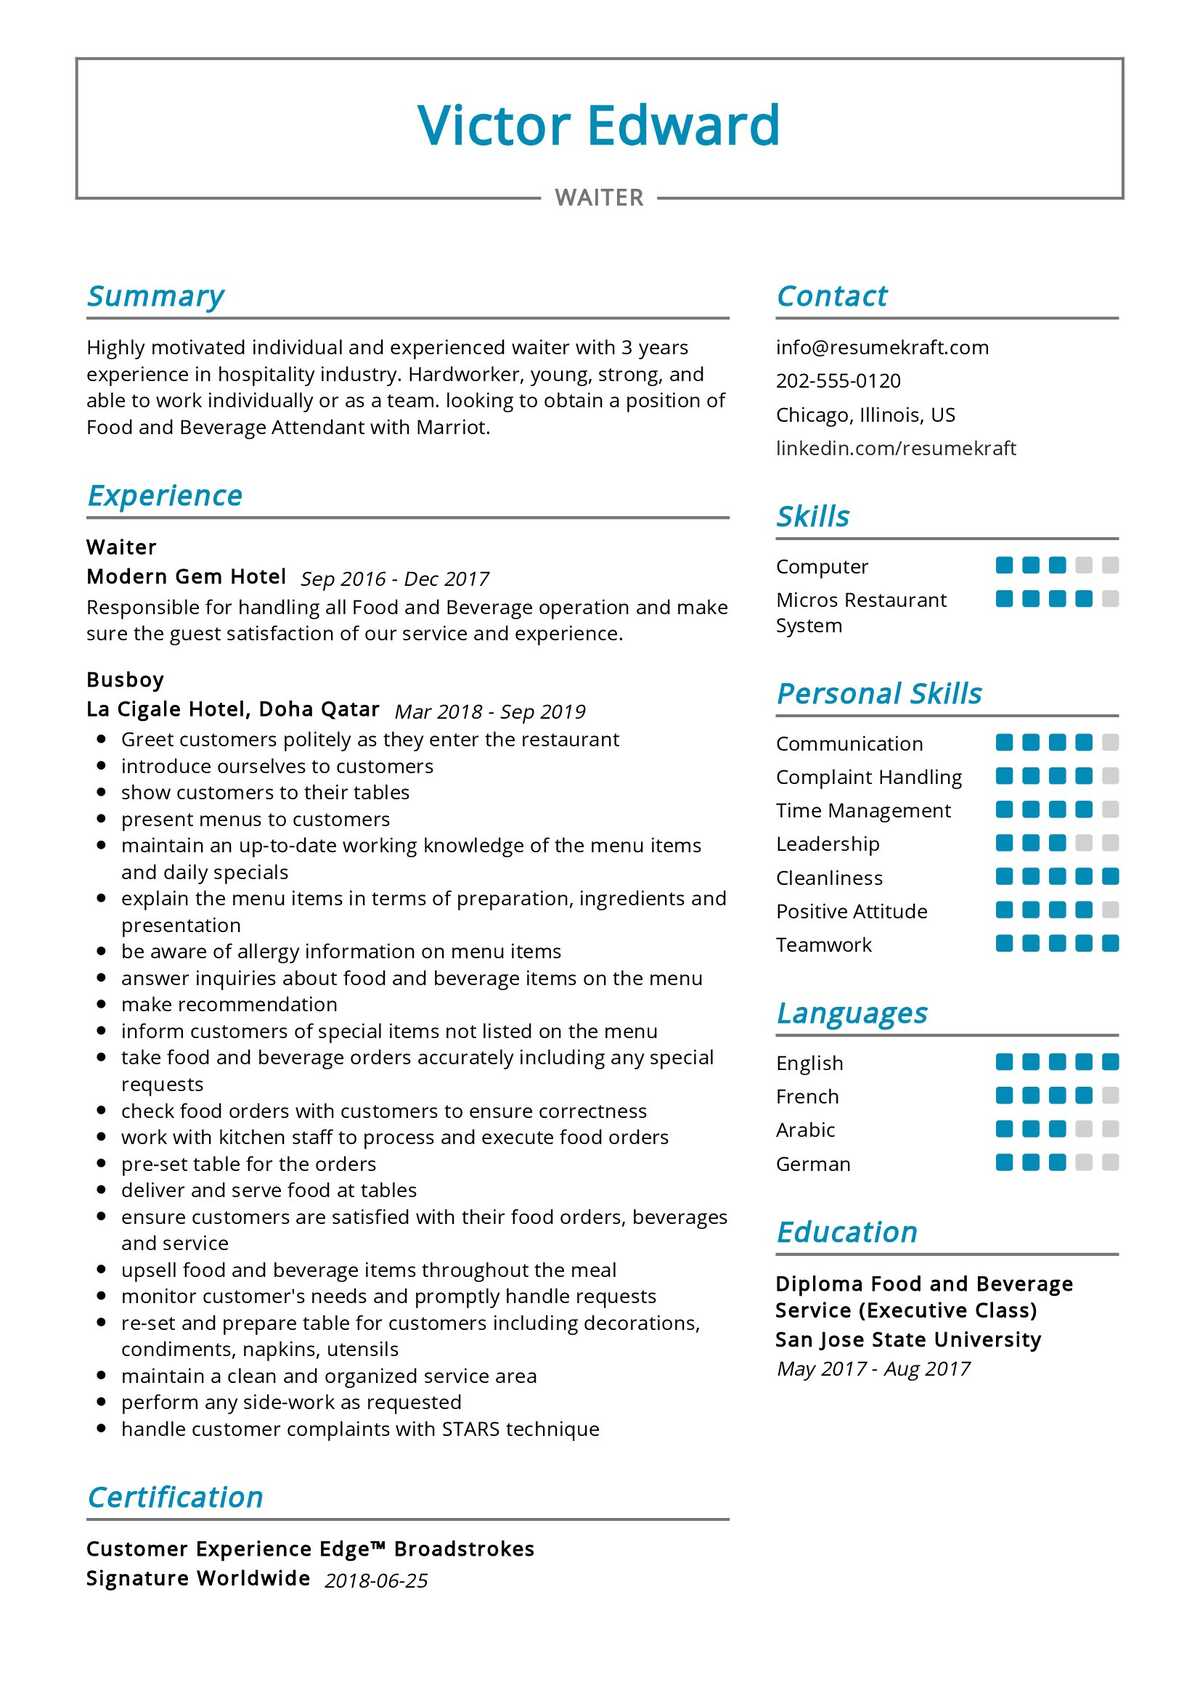 sample resume profile for waiter